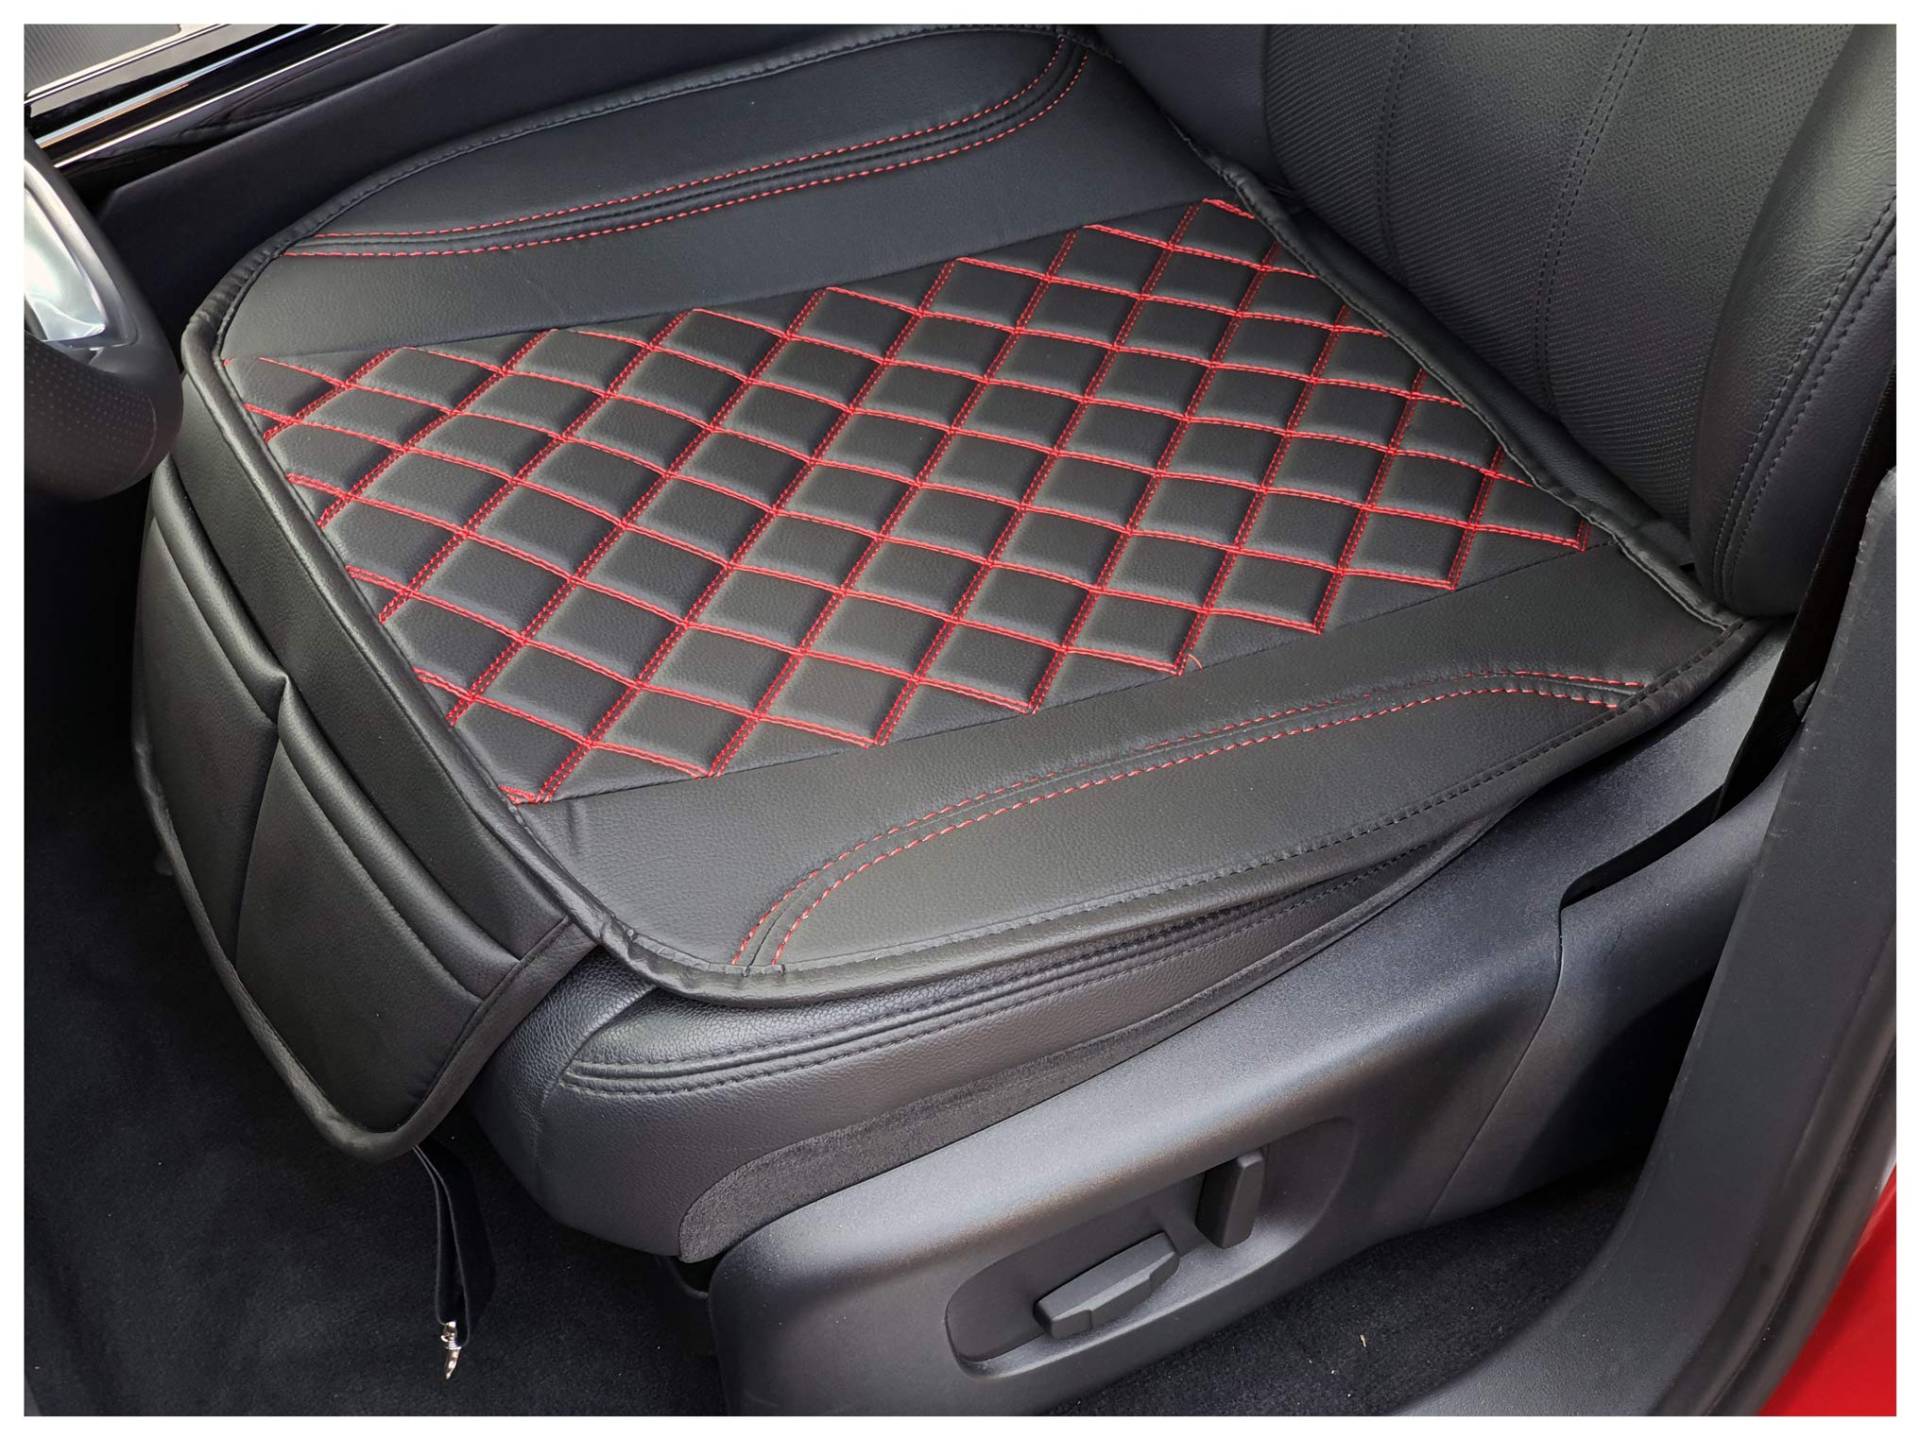 BREMER SITZBEZÜGE Sitzauflage Kunstleder Textilleder kompatibel mit Mazda CX-3 Sitzkissen in Kunstleder Schwarz/Rote Naht OT402 von BREMER SITZBEZÜGE